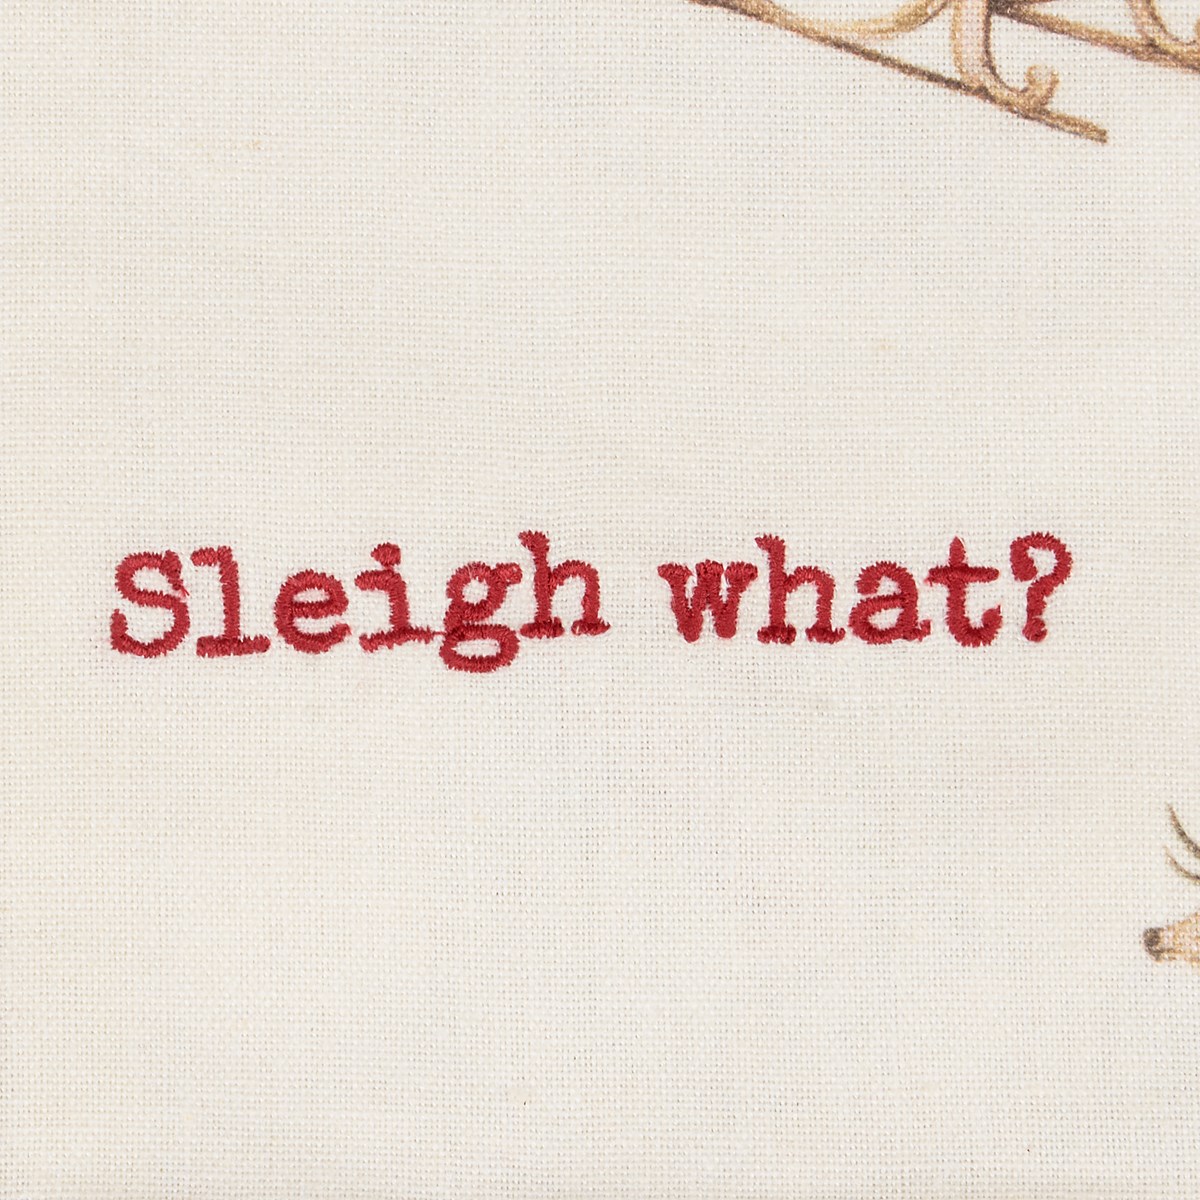 Sleigh What? Kitchen Towel - Cotton, Linen